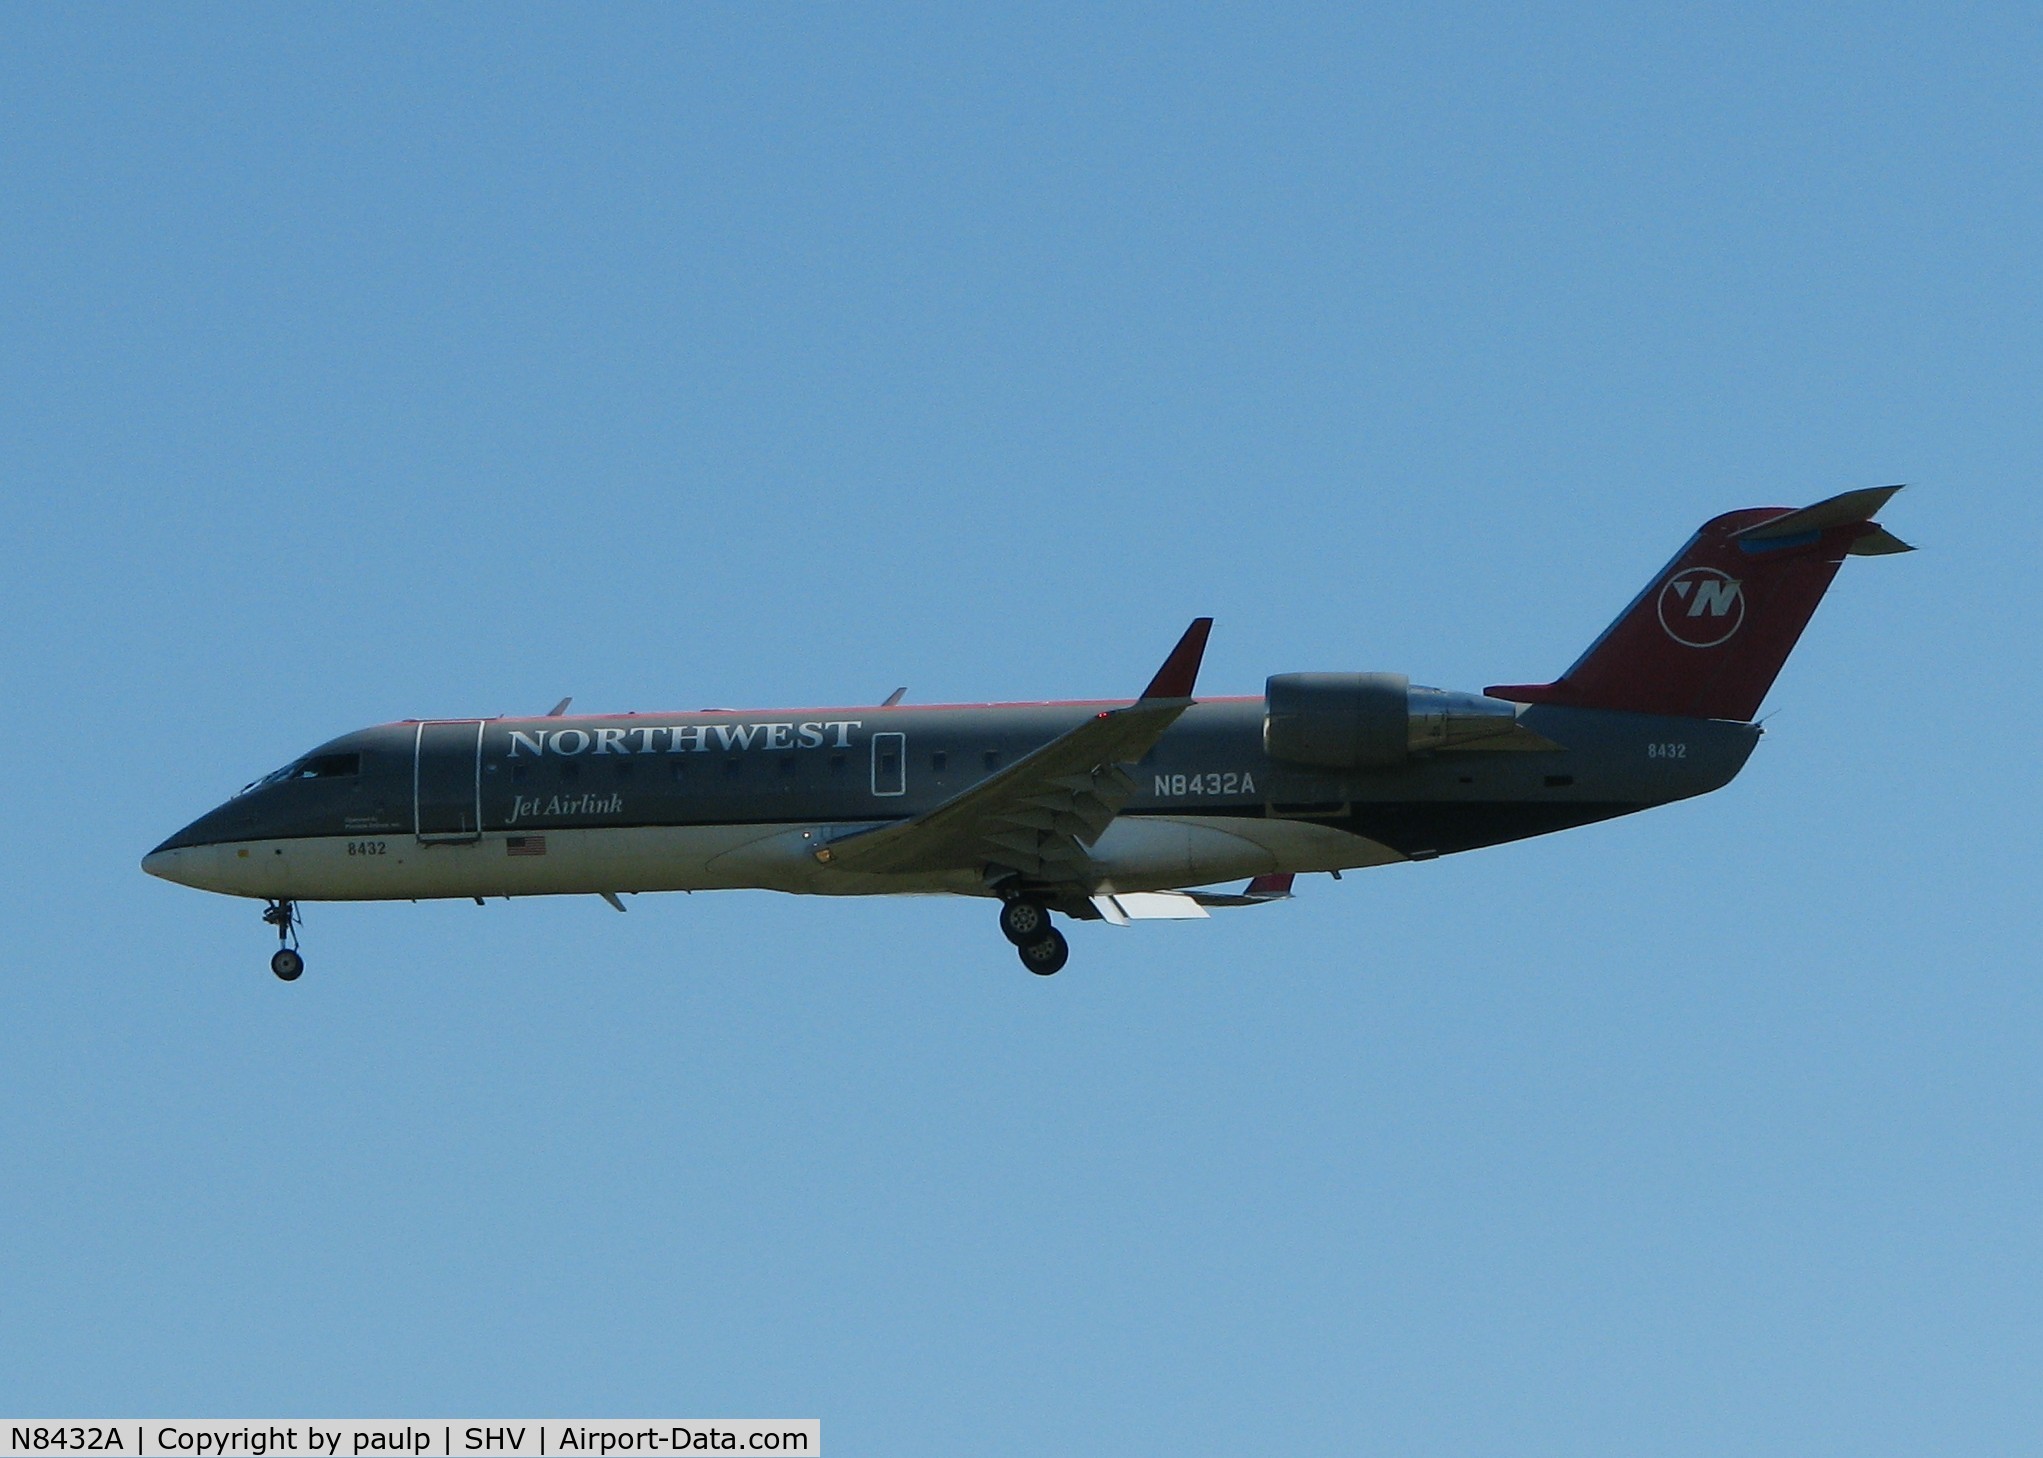 N8432A, 2000 Canadair CRJ-200LR (CL-600-2B19) C/N 7432, Landing on 32 at the Shreveport Regional airport.